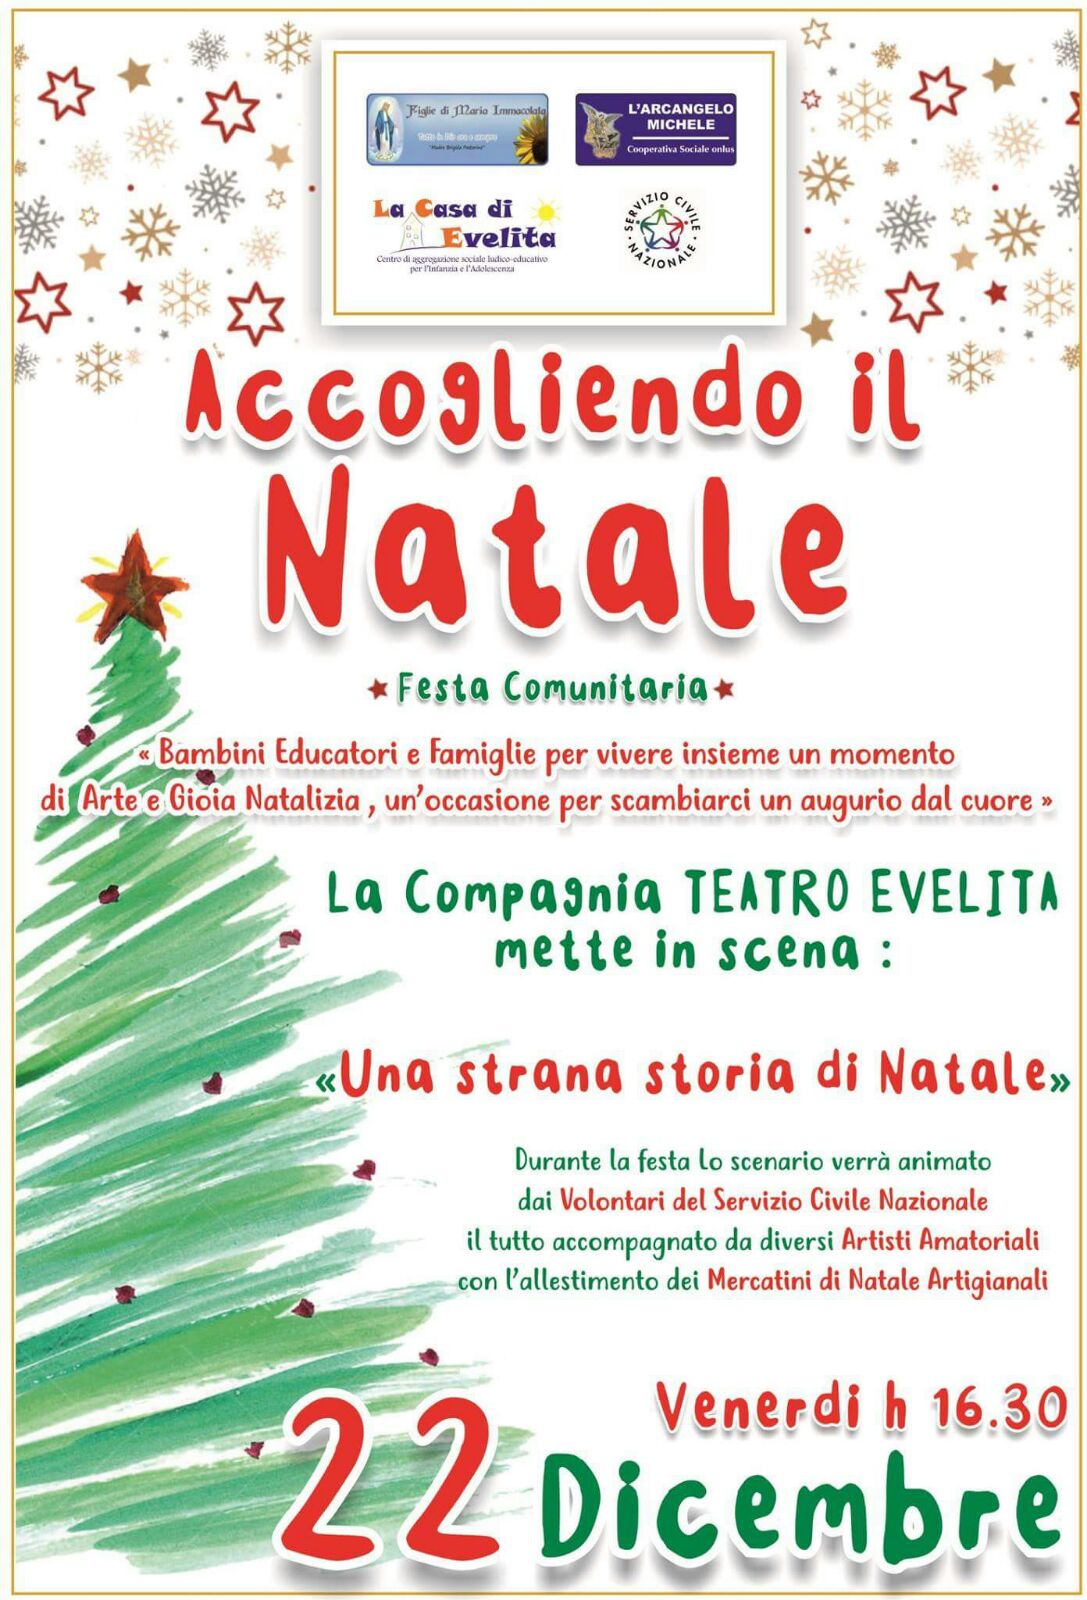 Spettacoli Di Natale Per Bambini.Reggio Calabria L Associazione Evelita Promuove Lo Spettacolo Di Natale Per Famiglie Stretto Web